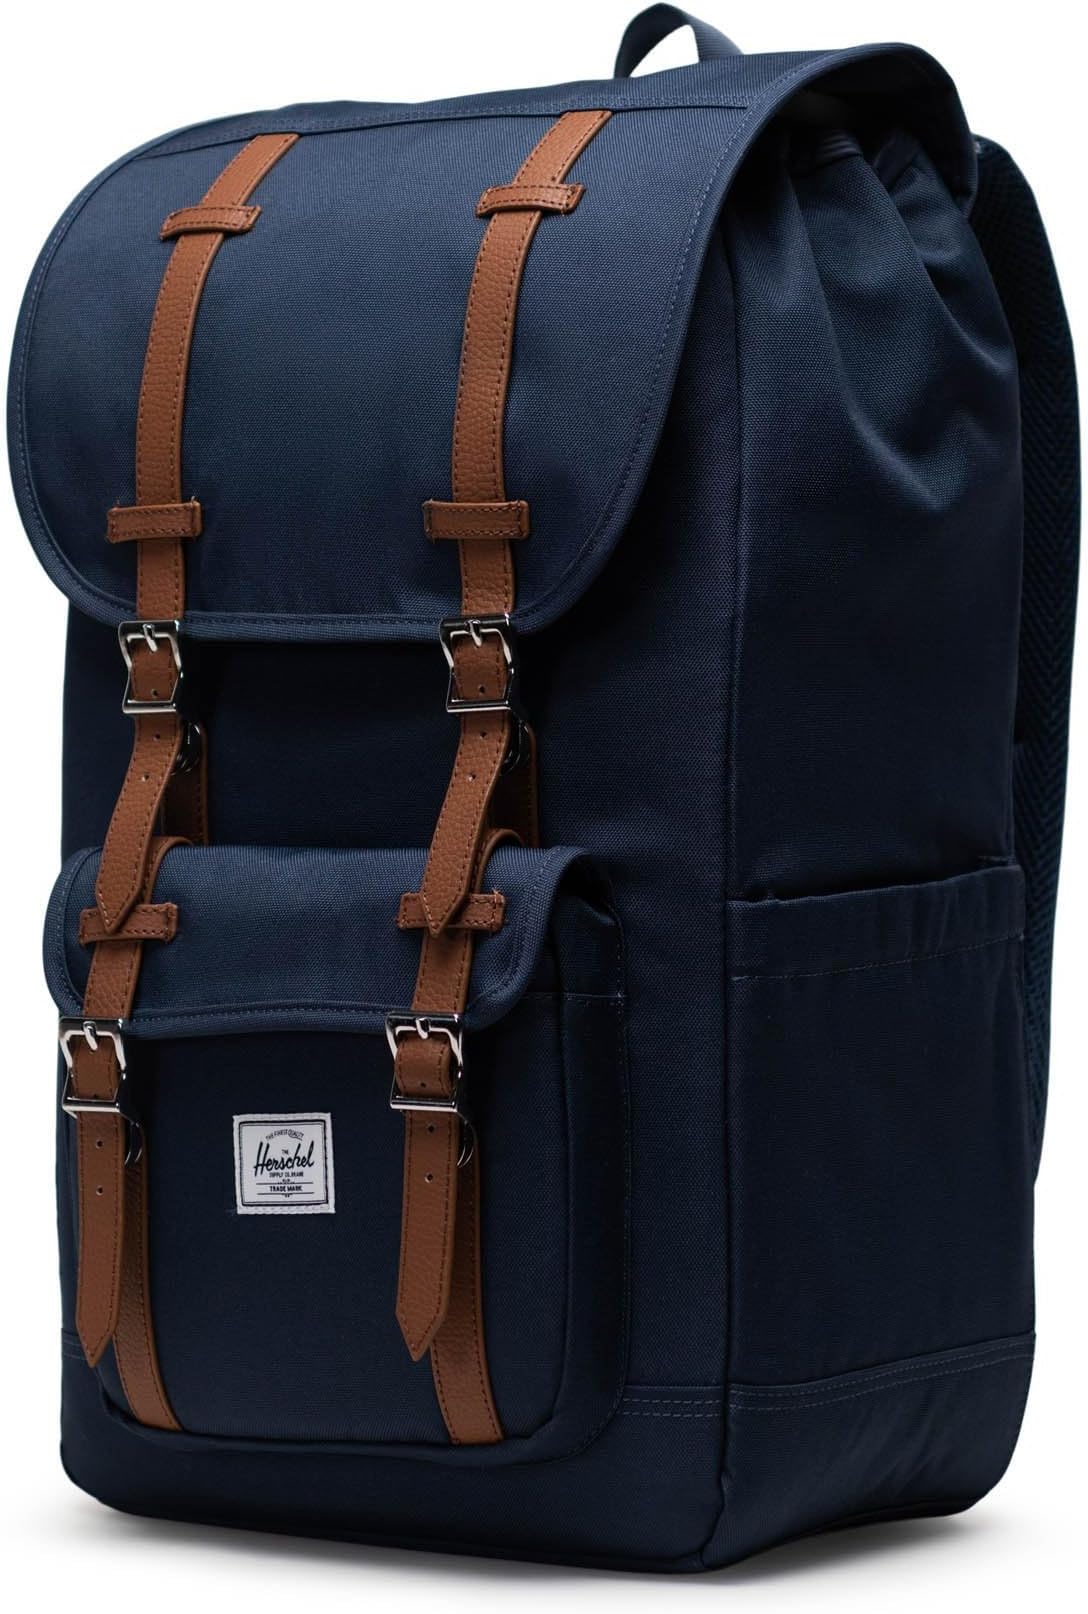 Рюкзак Little America Backpack Herschel Supply Co., темно-синий